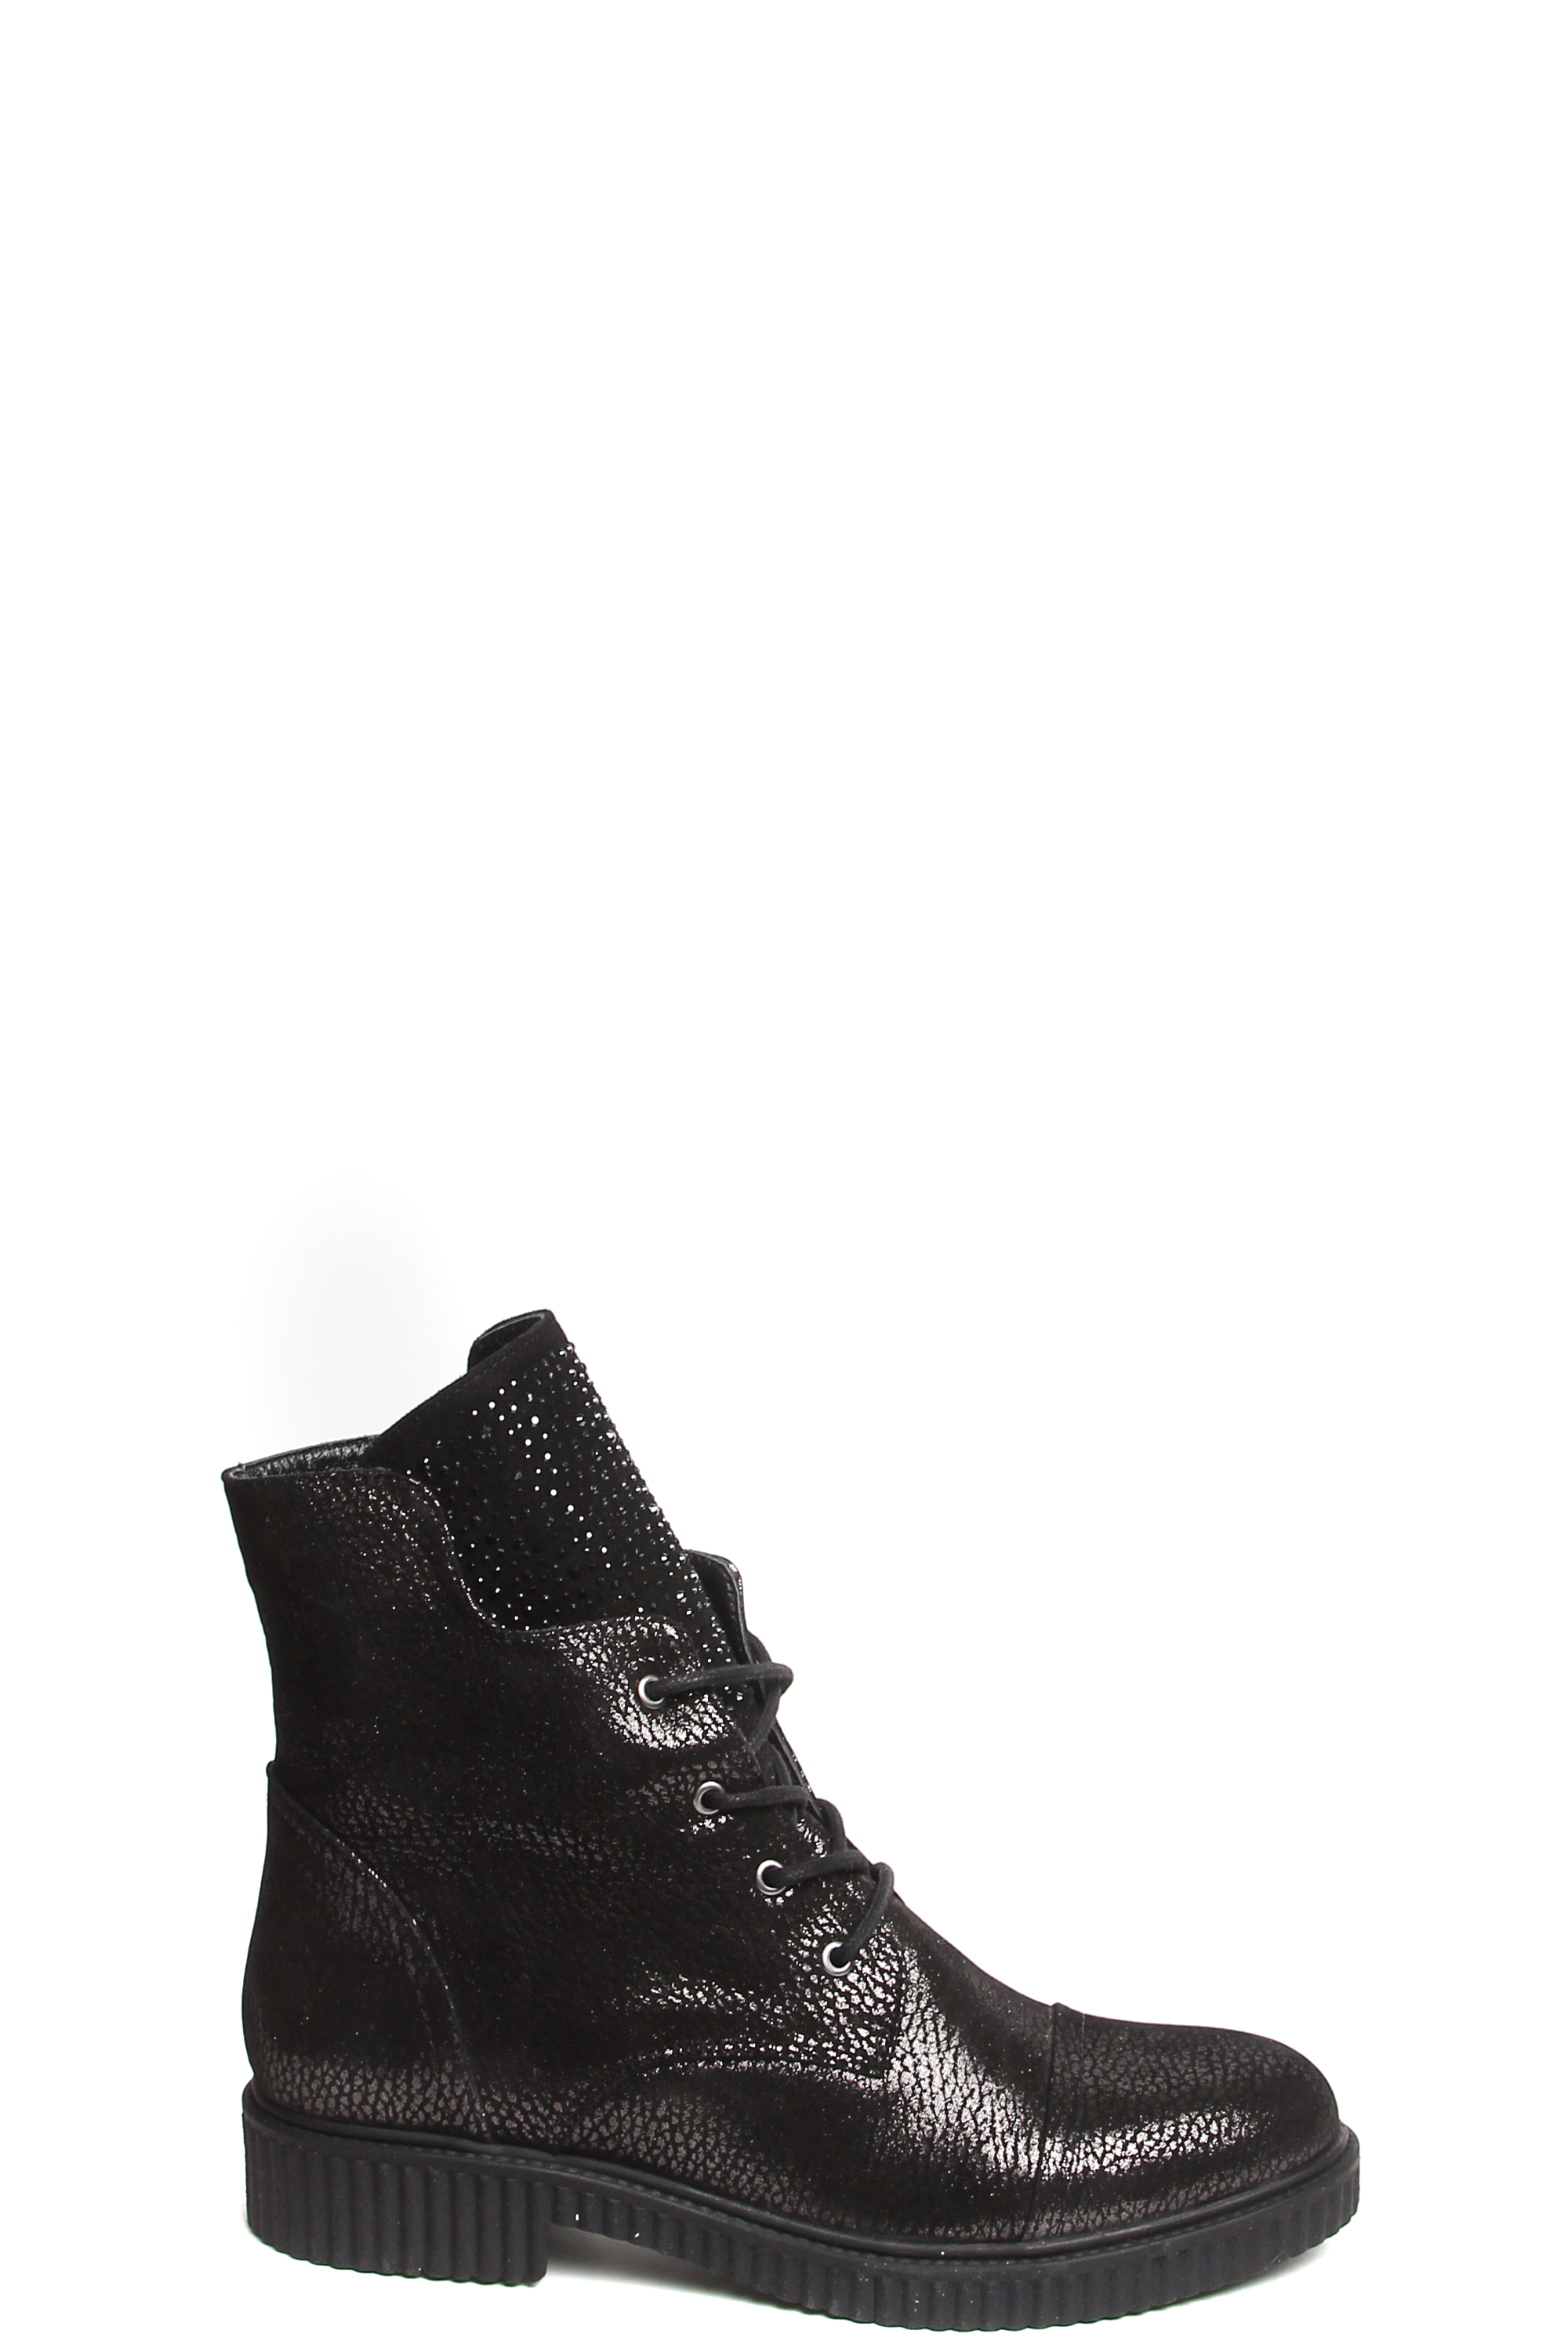 Ботинки MILANA 182315-1-110F черный - купить 13990